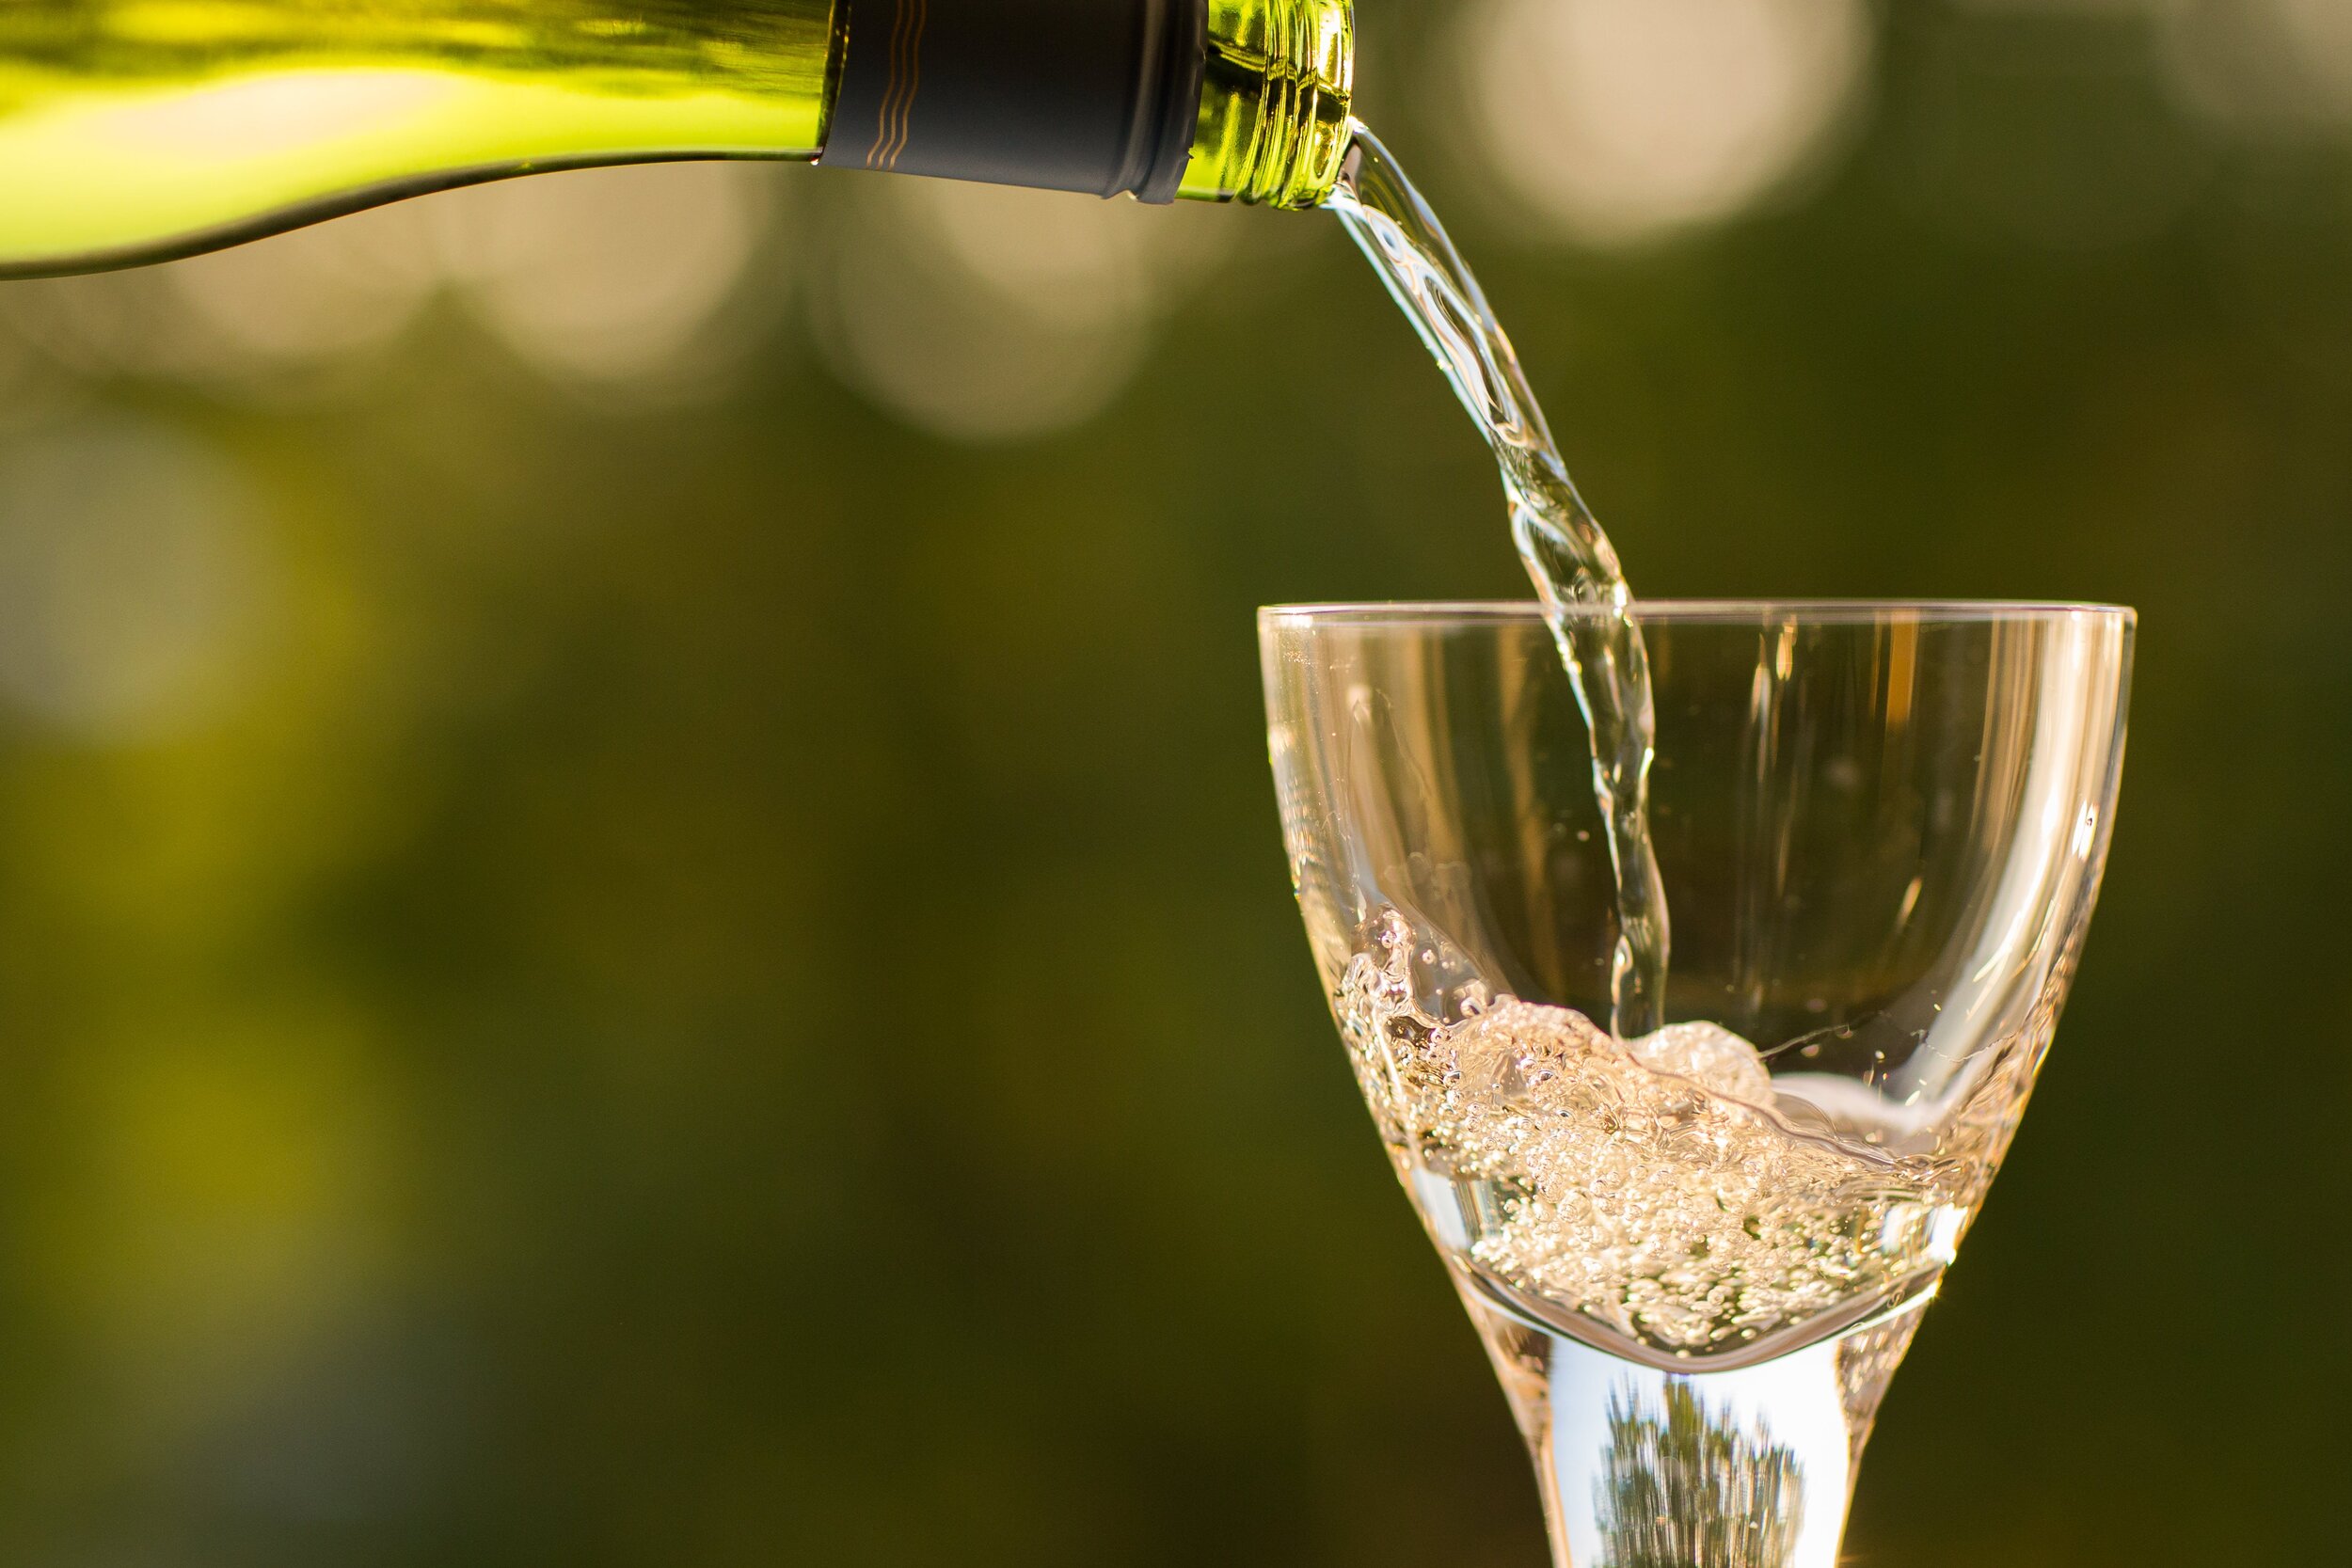 bottle-pouring-summertime-wine-glass-107556.jpg